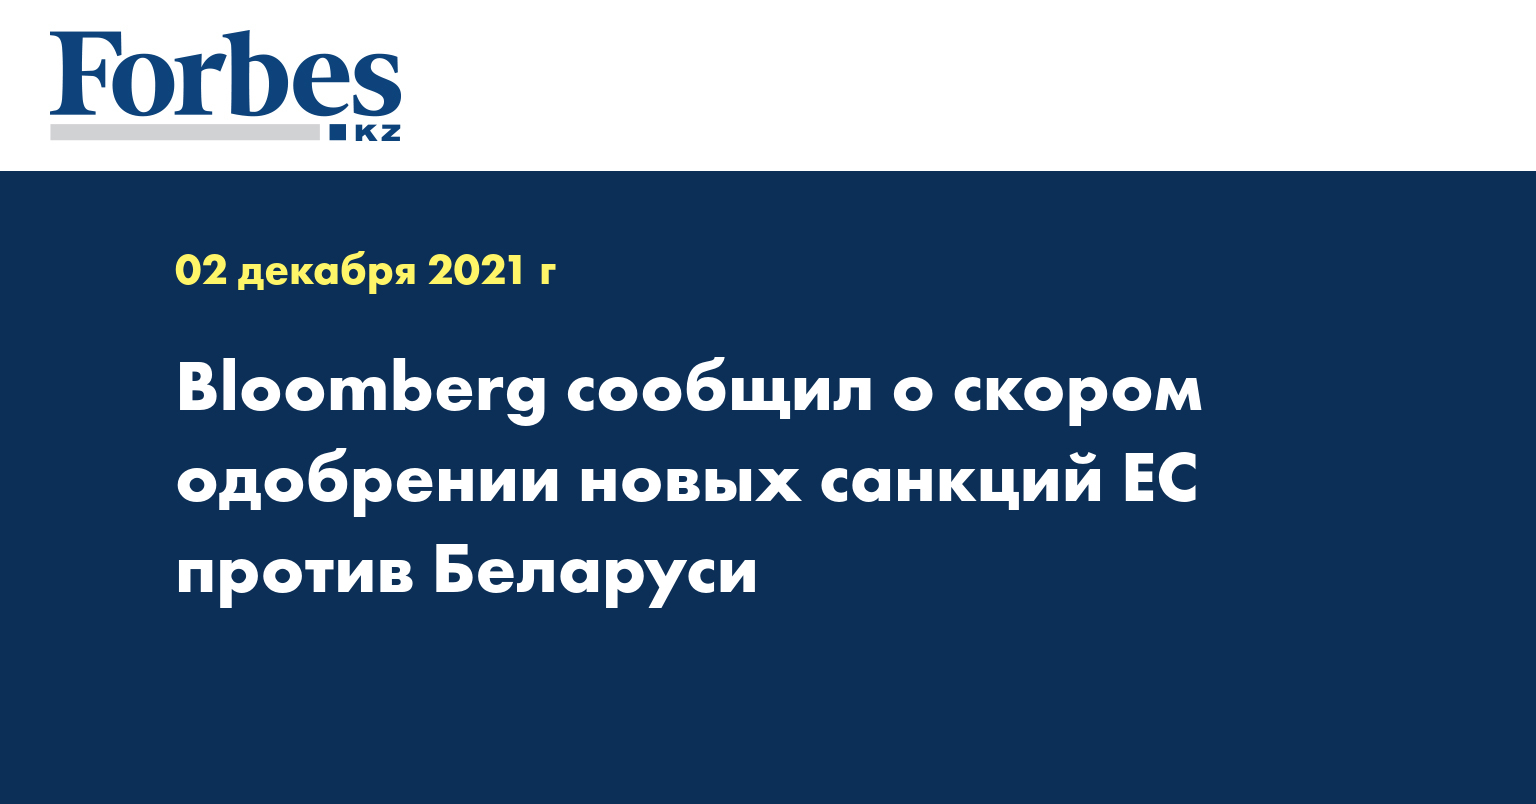 Bloomberg сообщил о скором одобрении новых санкций ЕС против Беларуси